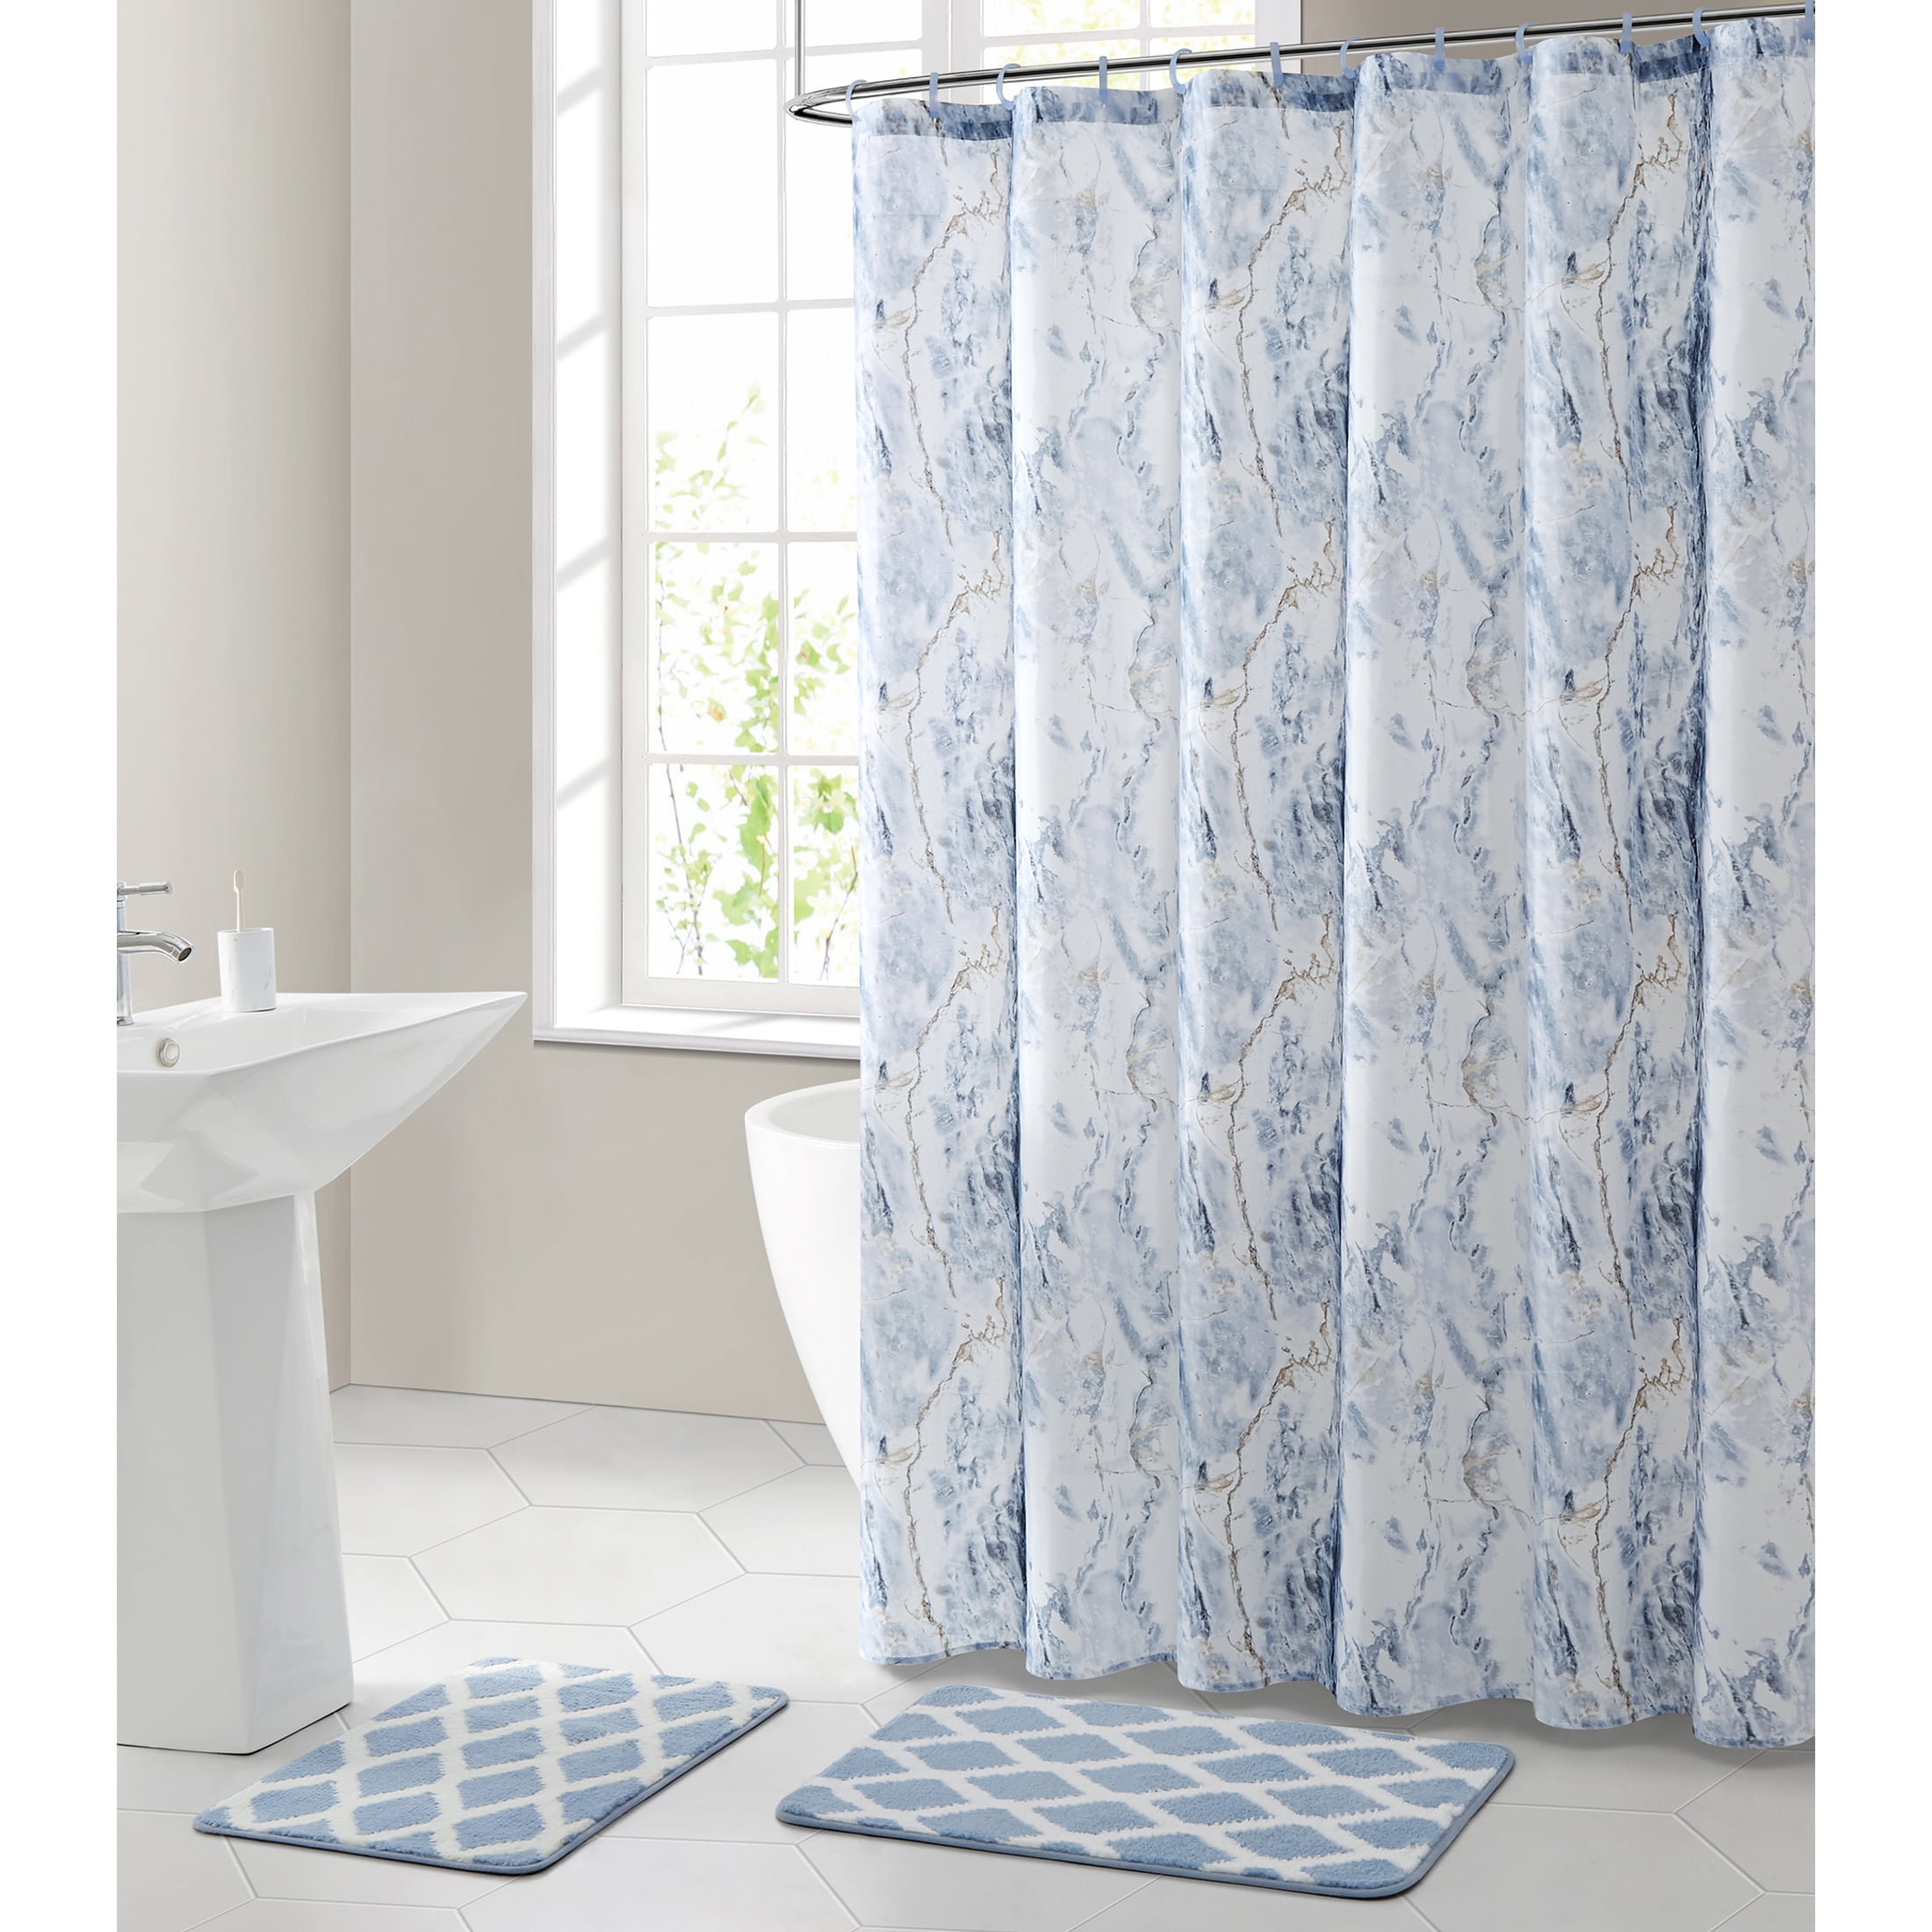 White & Grey Marble Modern PEVA Waterproof Shower Curtain & Rings Set Bathroom 